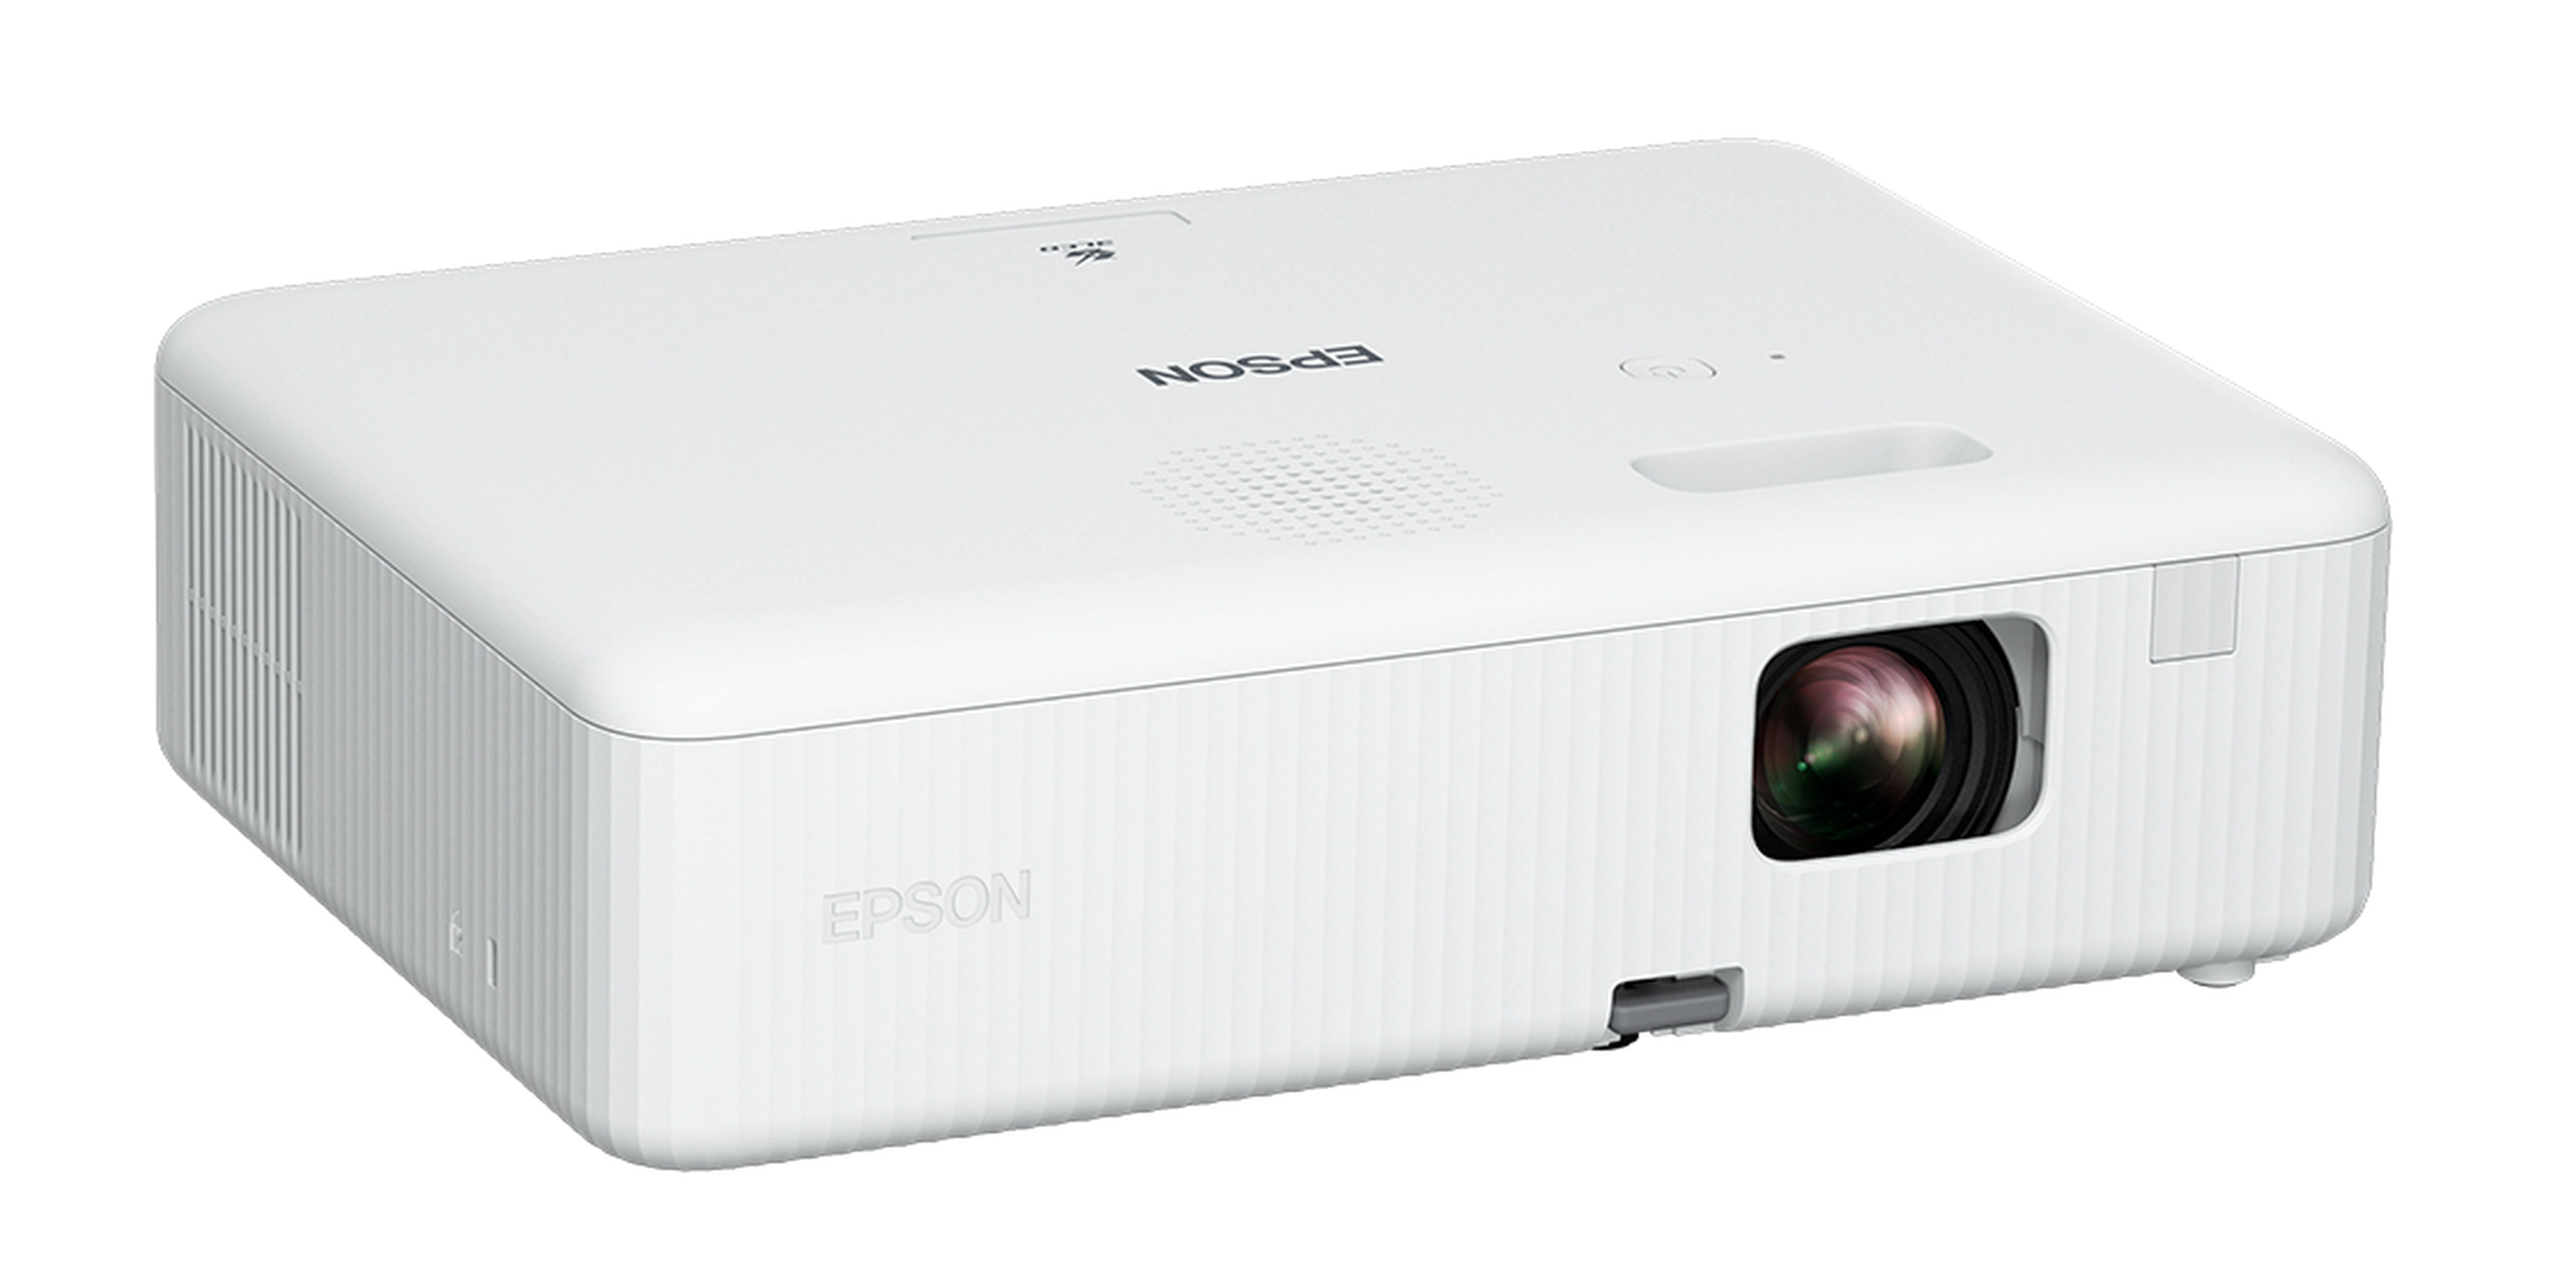 Epson CO-W01 - 3-LCD-Projektor - tragbar - 3000 lm (weiß)